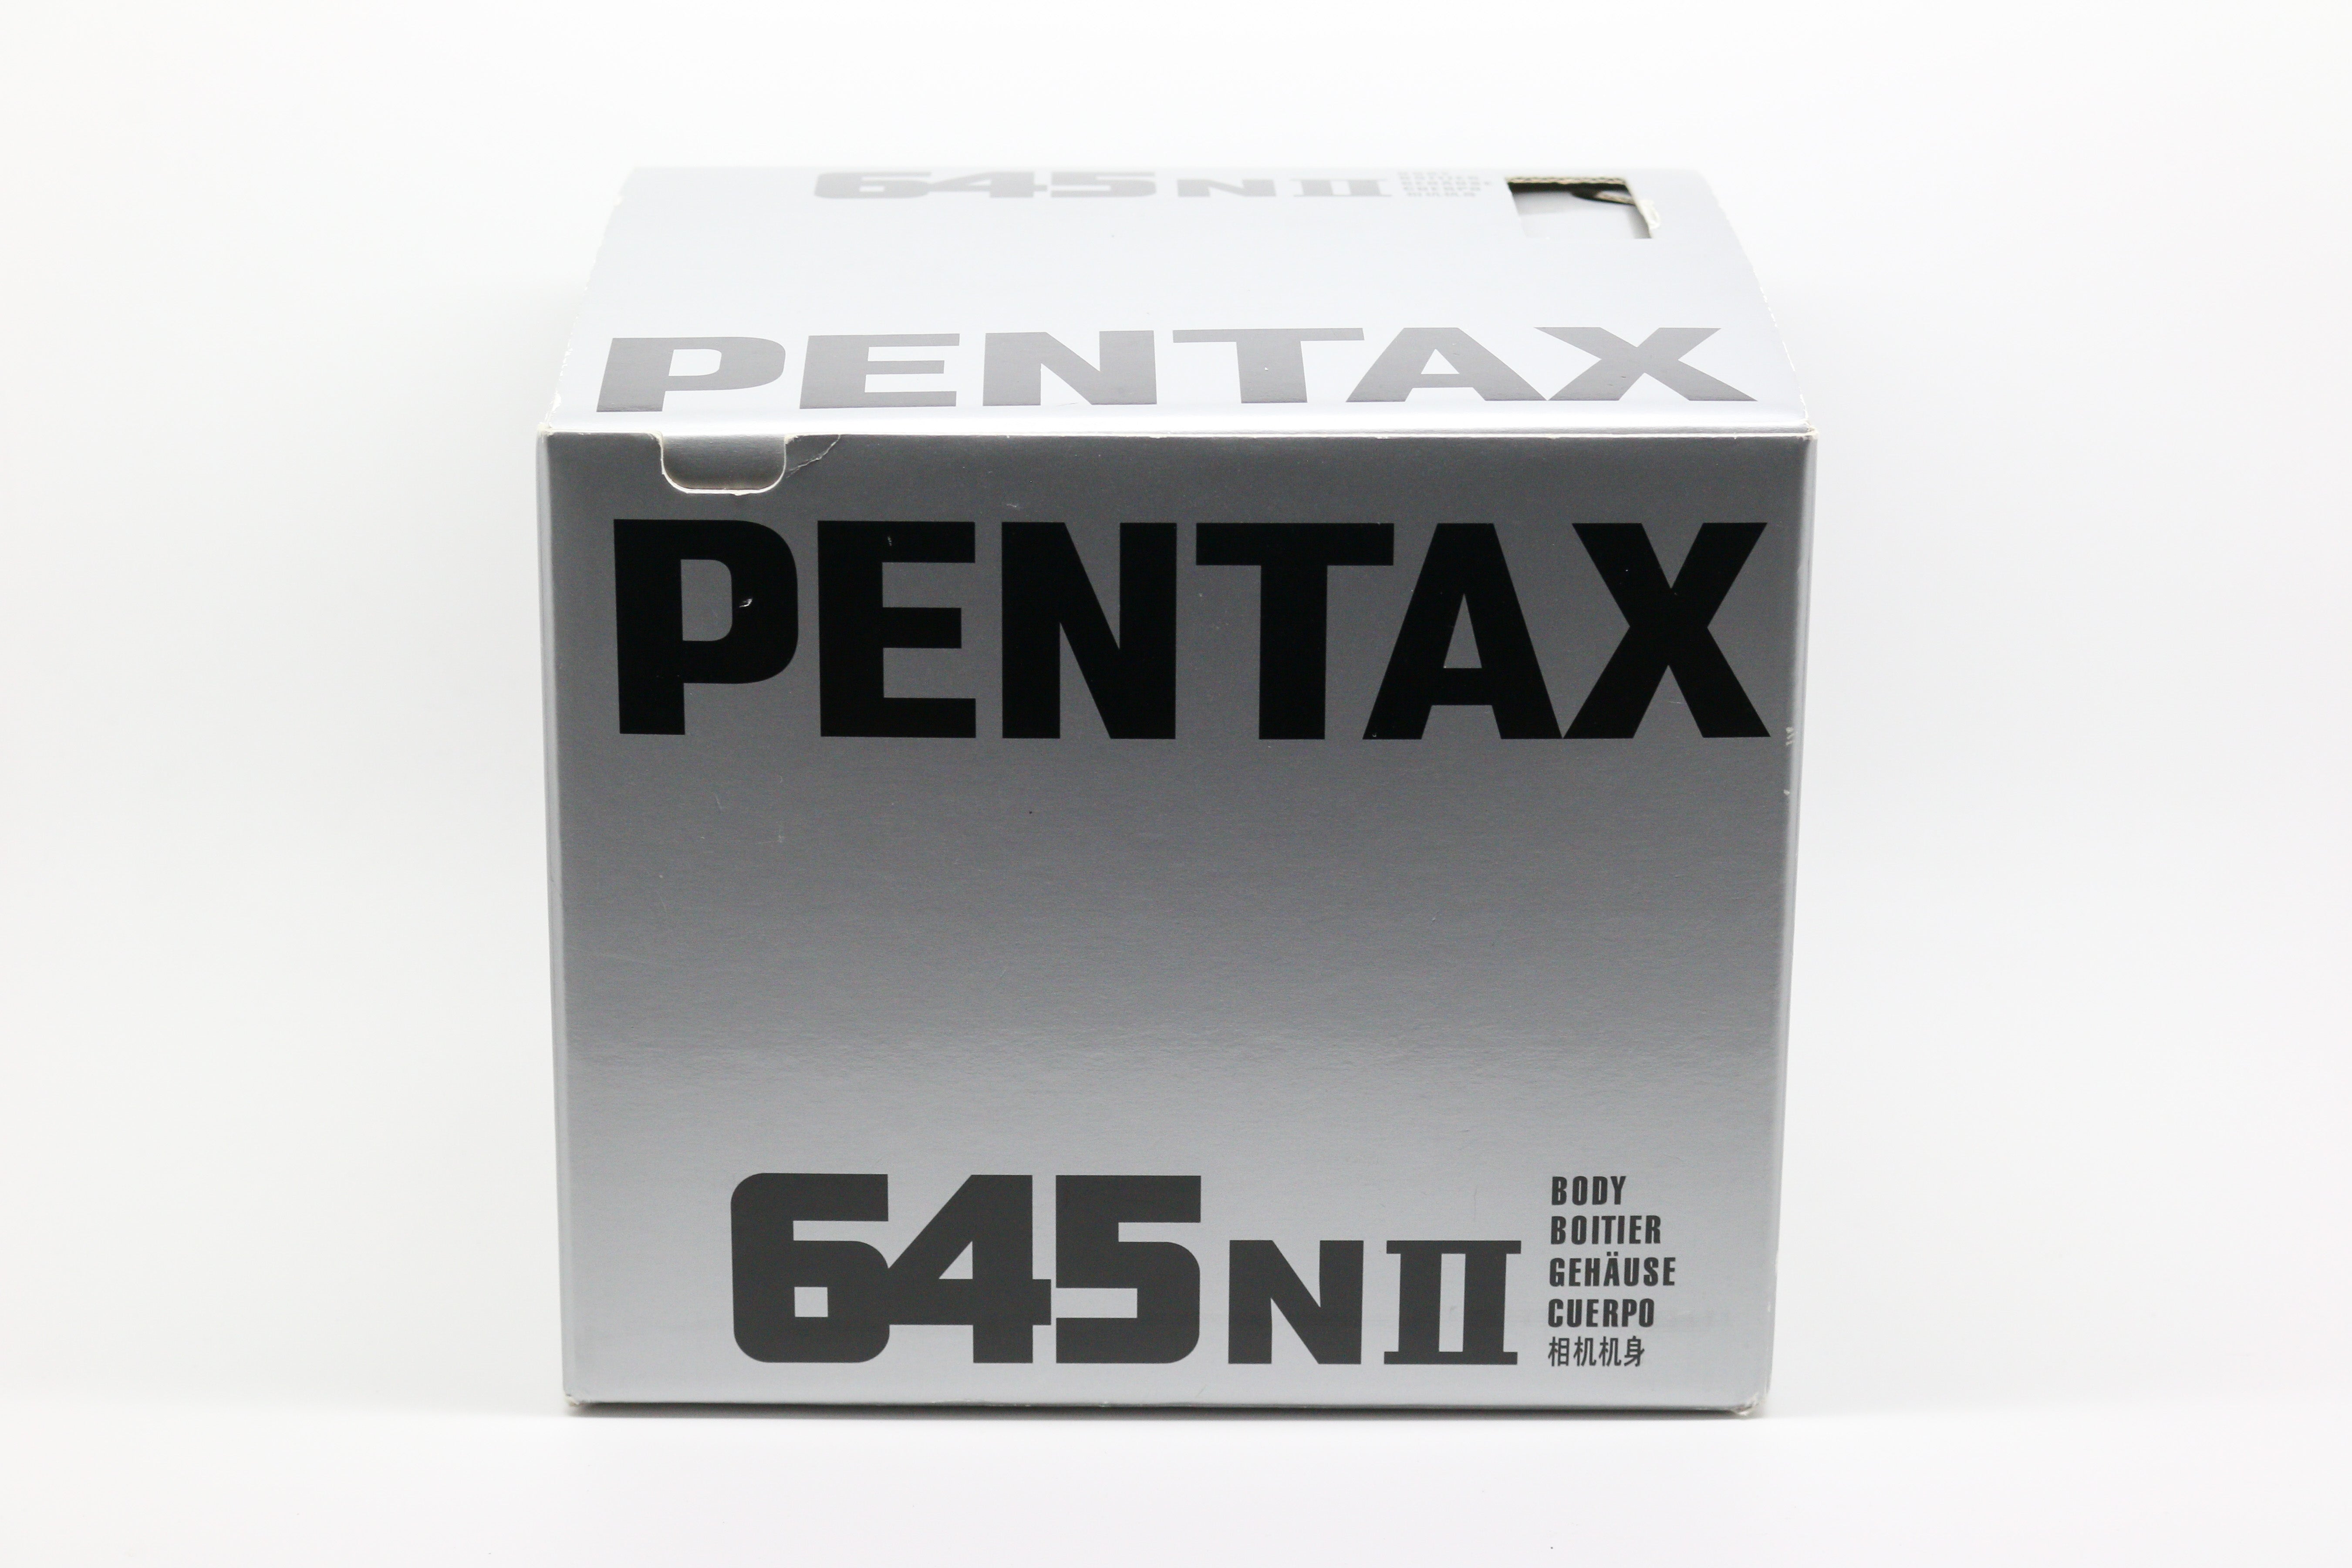 Pentax 645NII